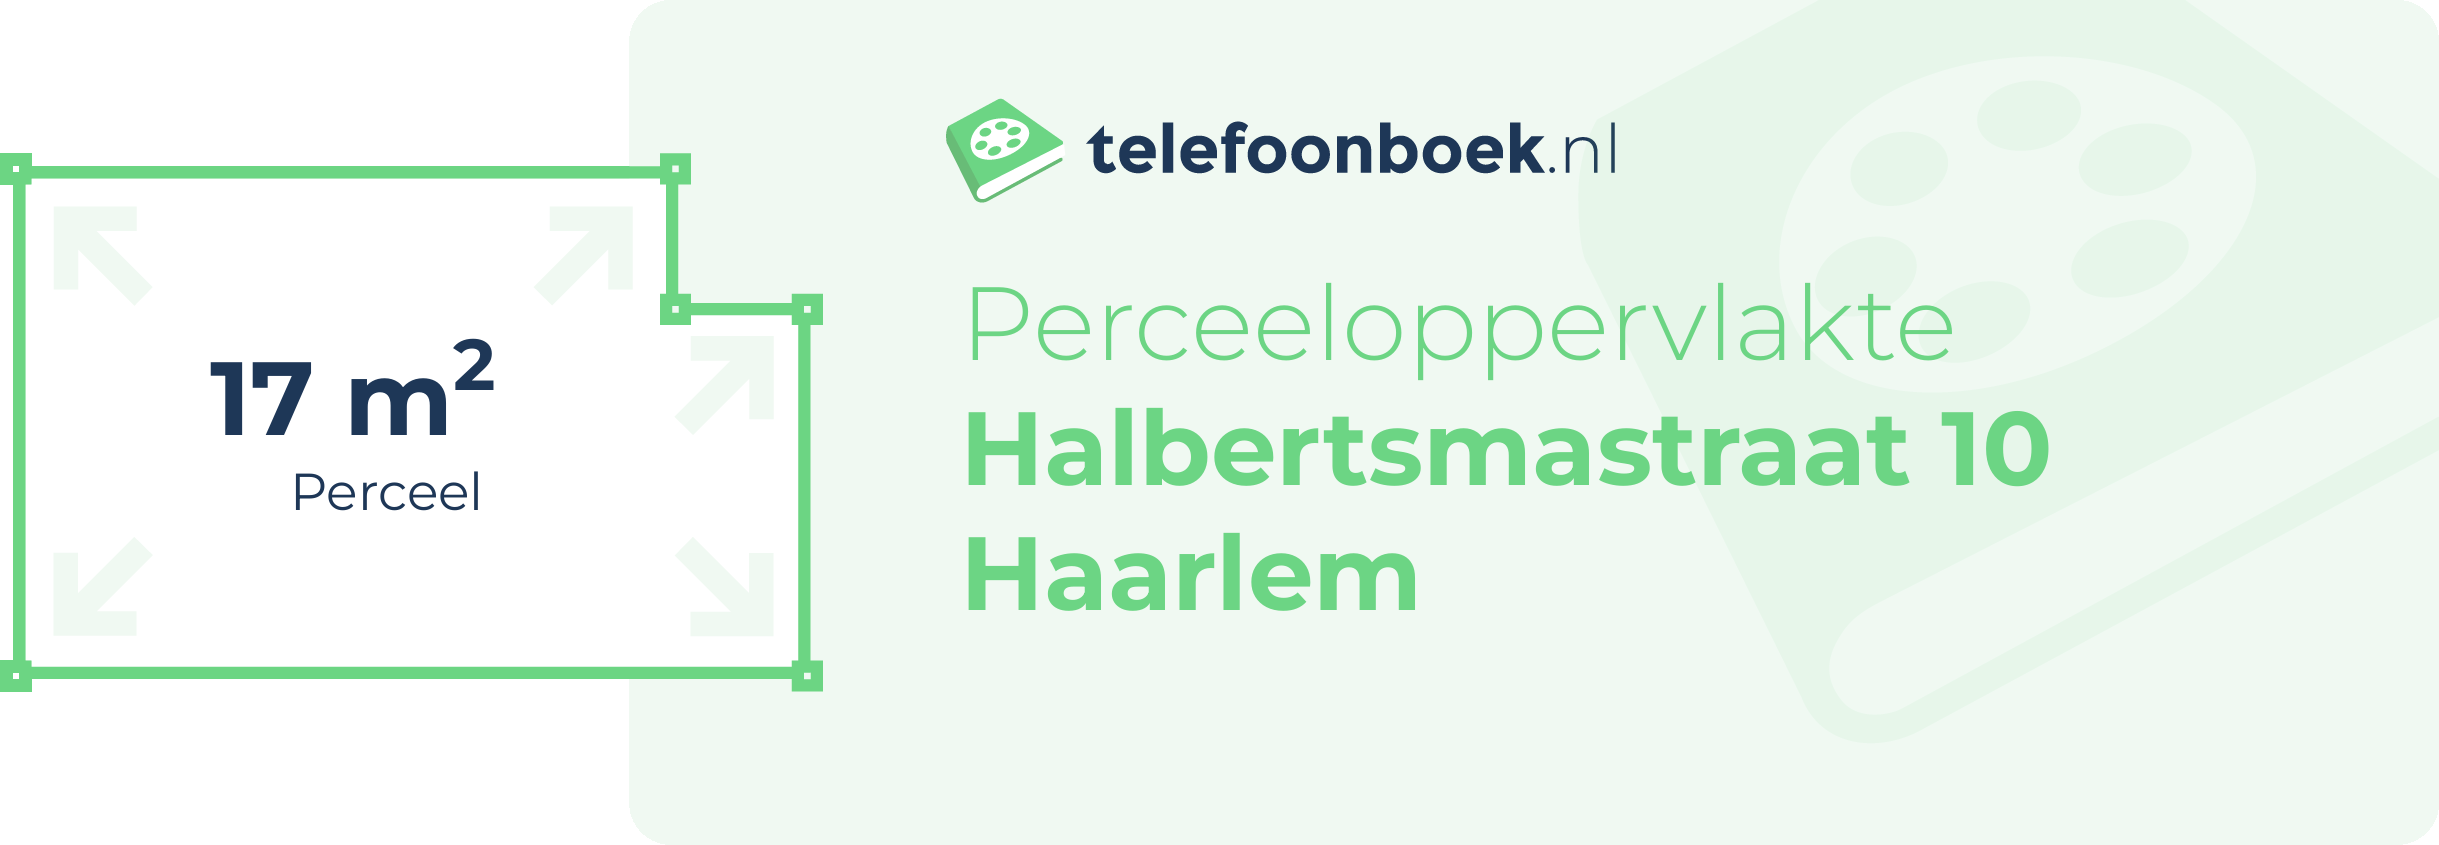 Perceeloppervlakte Halbertsmastraat 10 Haarlem